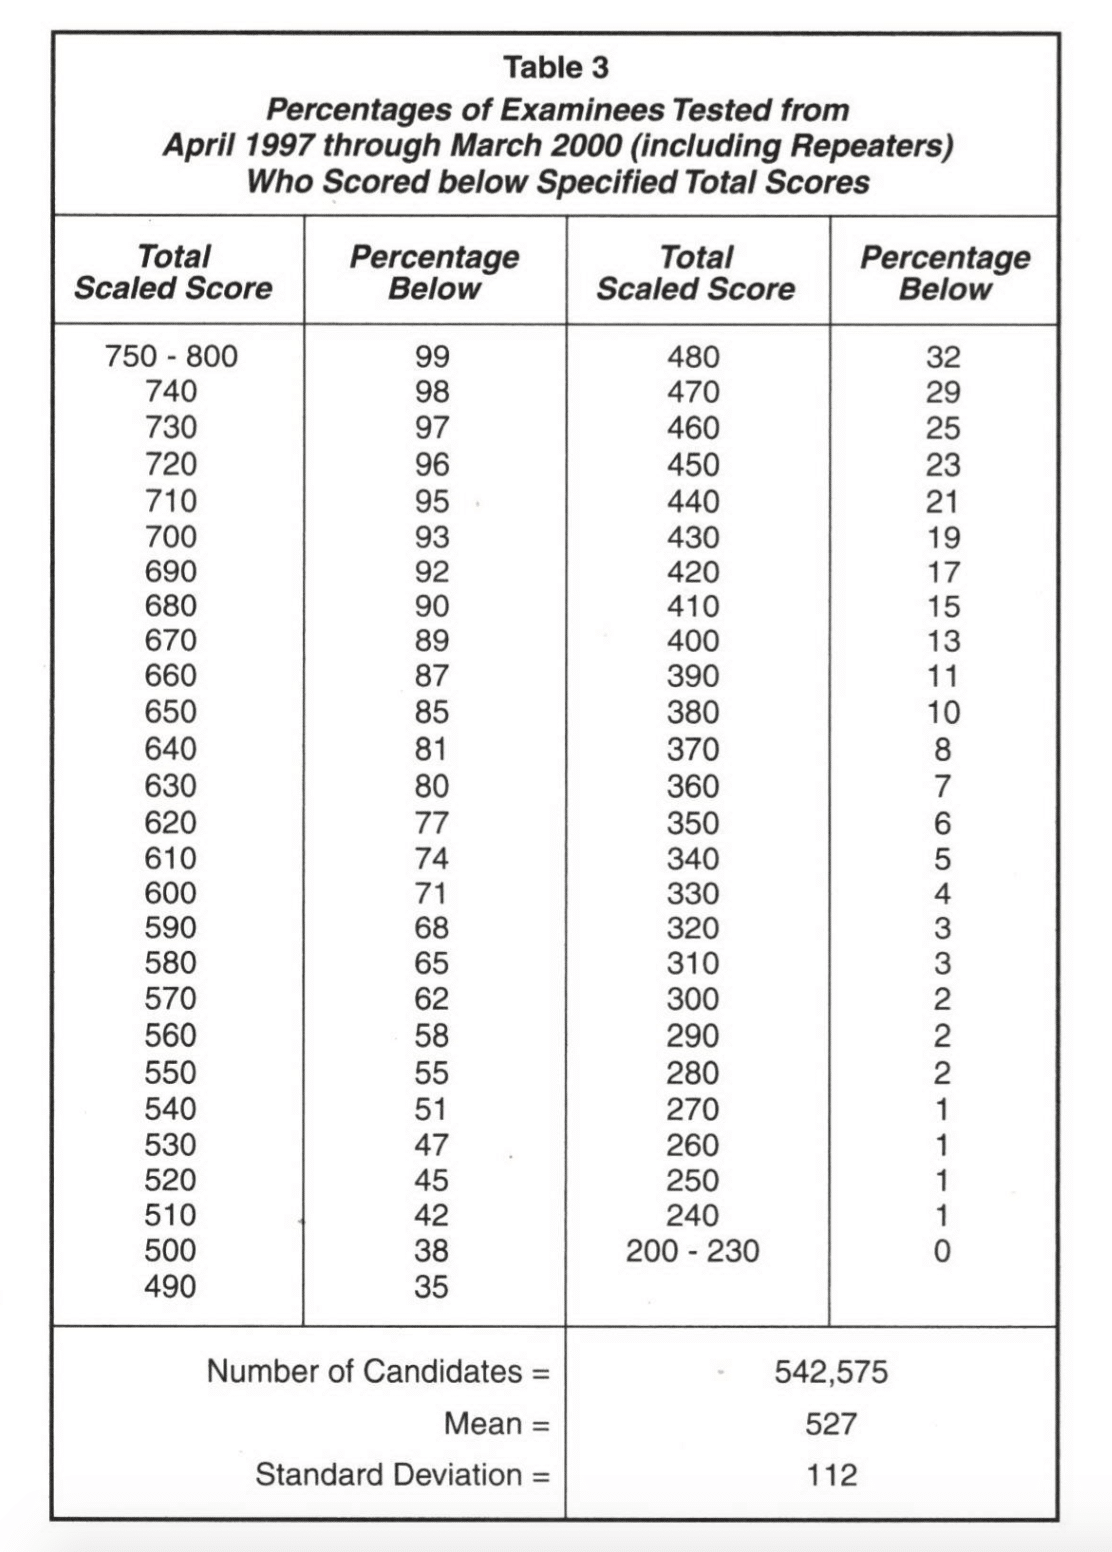 Lsat Score Percentile Chart